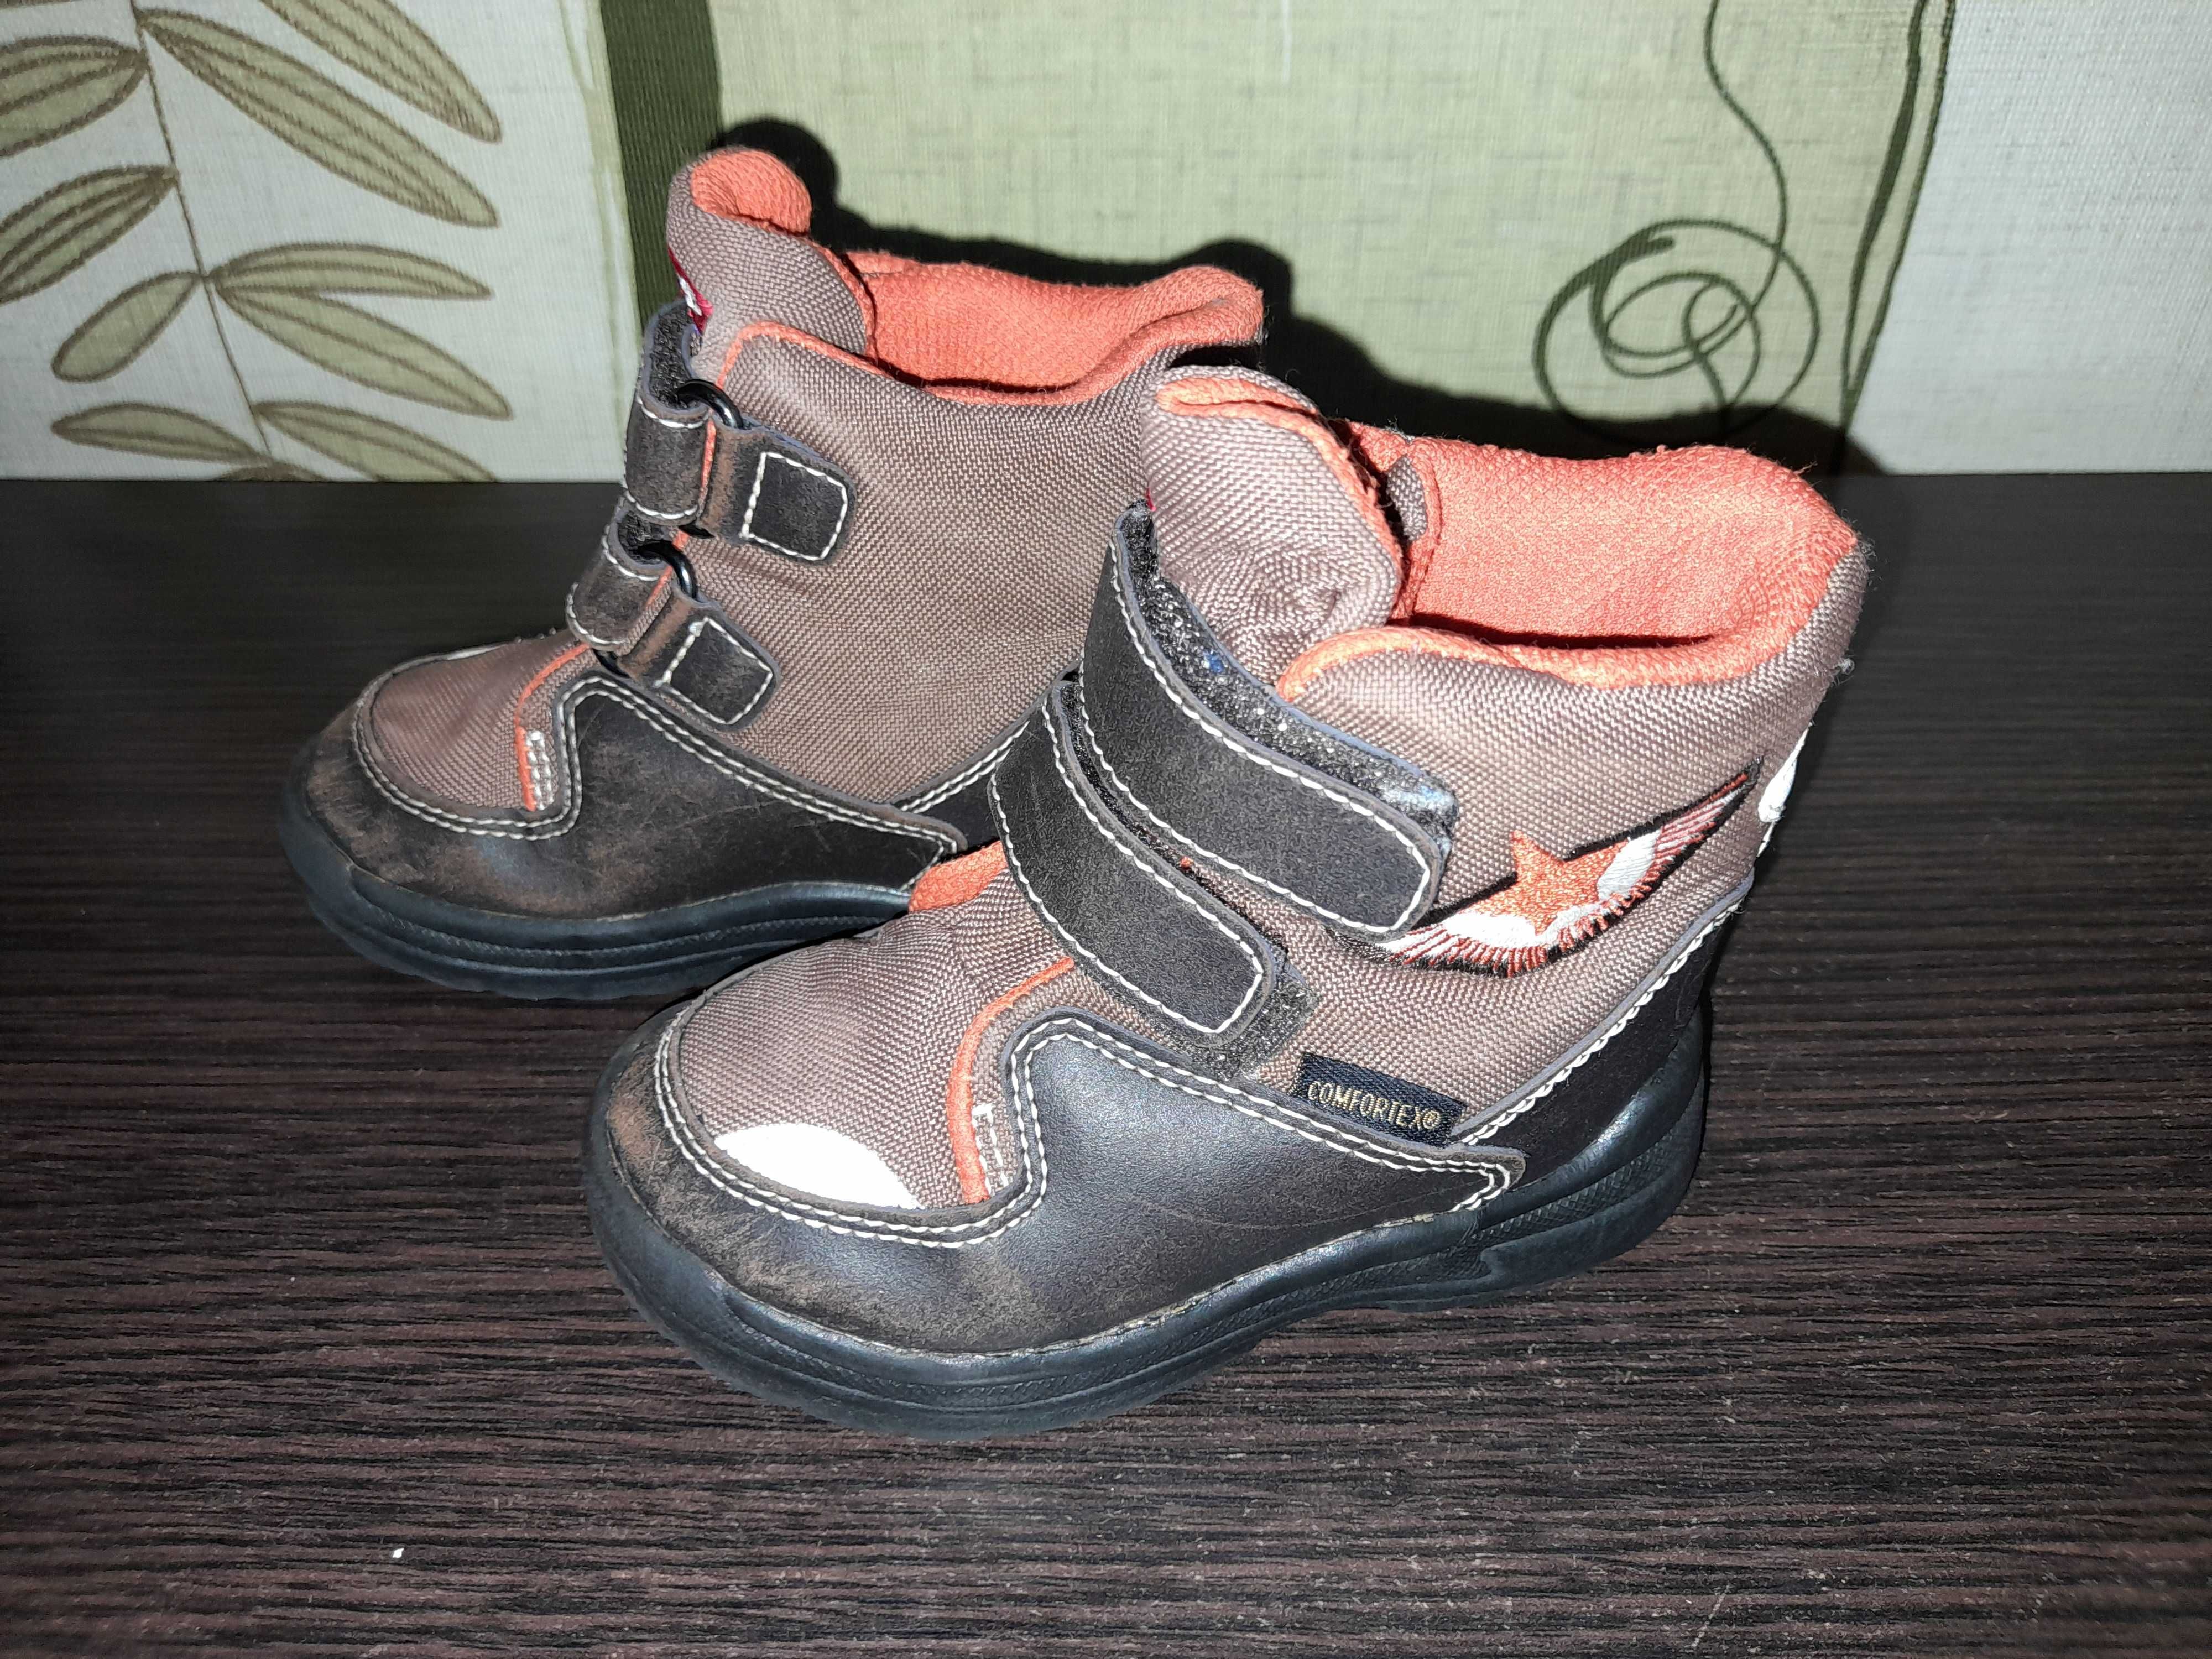 Зимние  сапожки Demar,  ботинки,  резиновые сапожки,  детская обувь